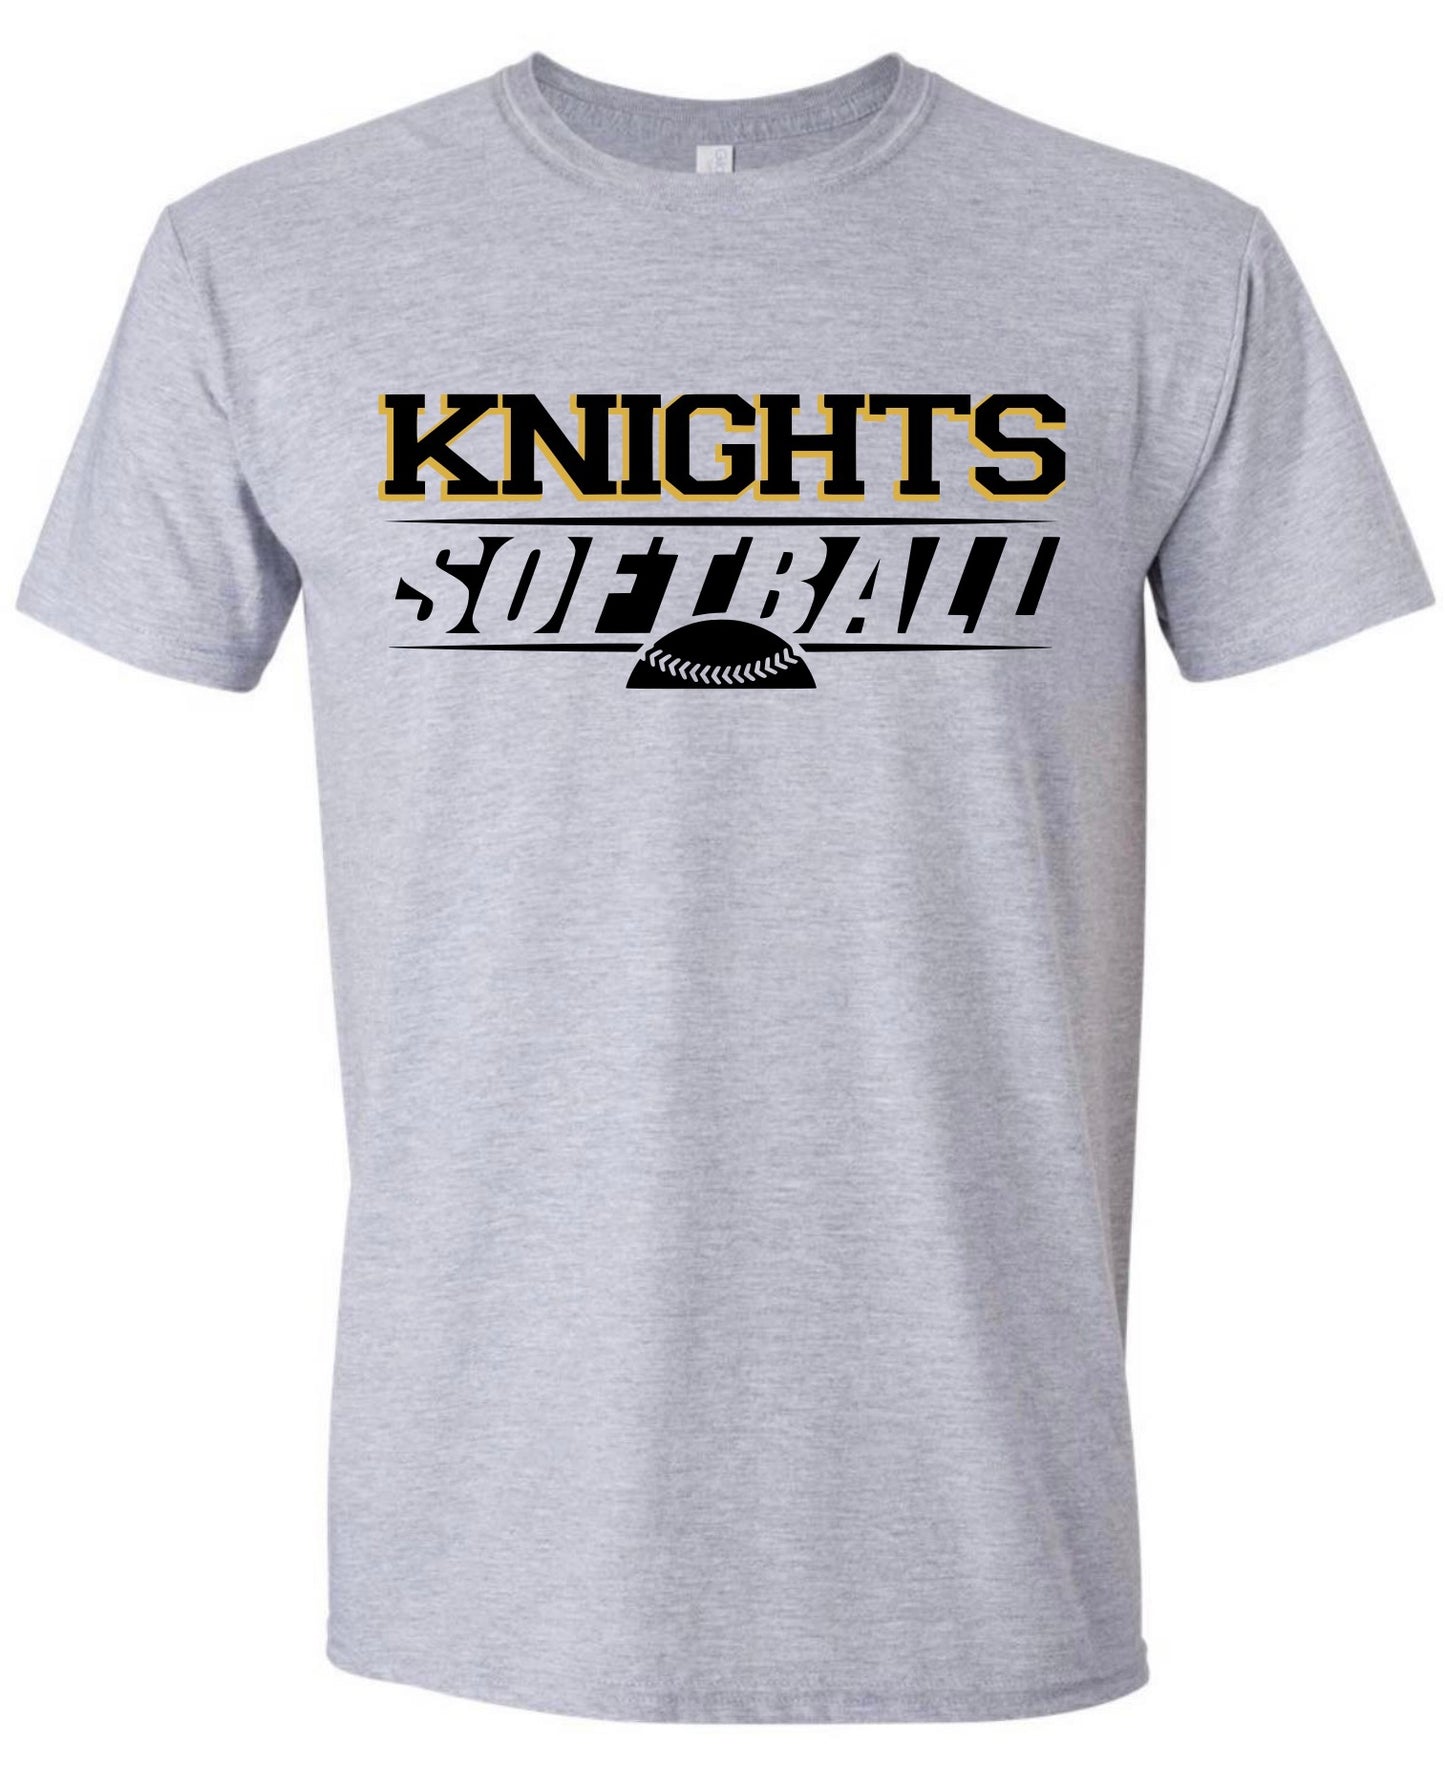 Knights Softball Tshirt